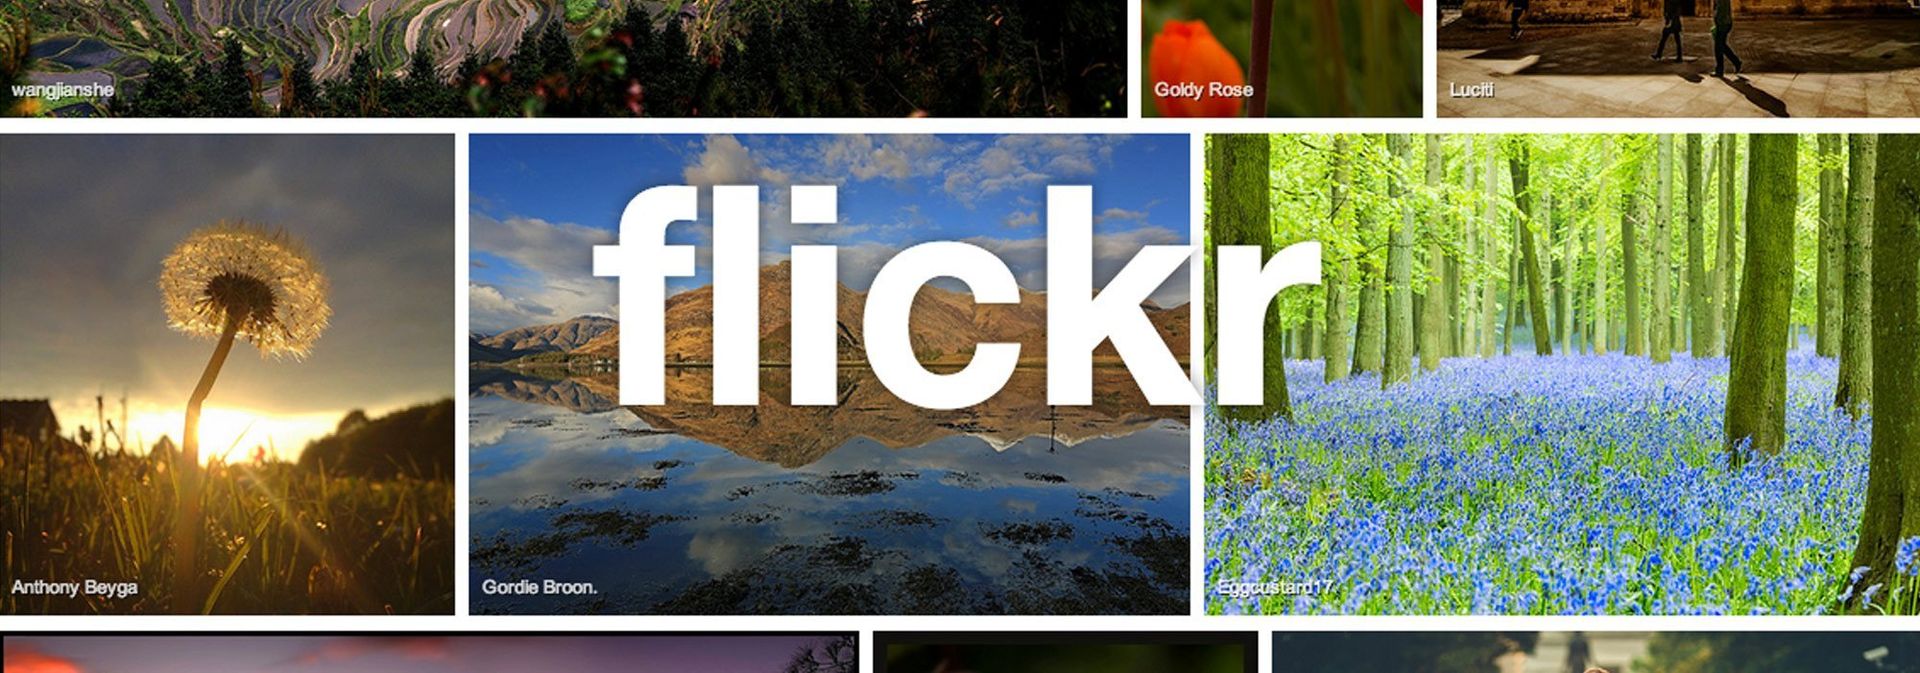 Flickr Marketing Agency Solution Web Designs